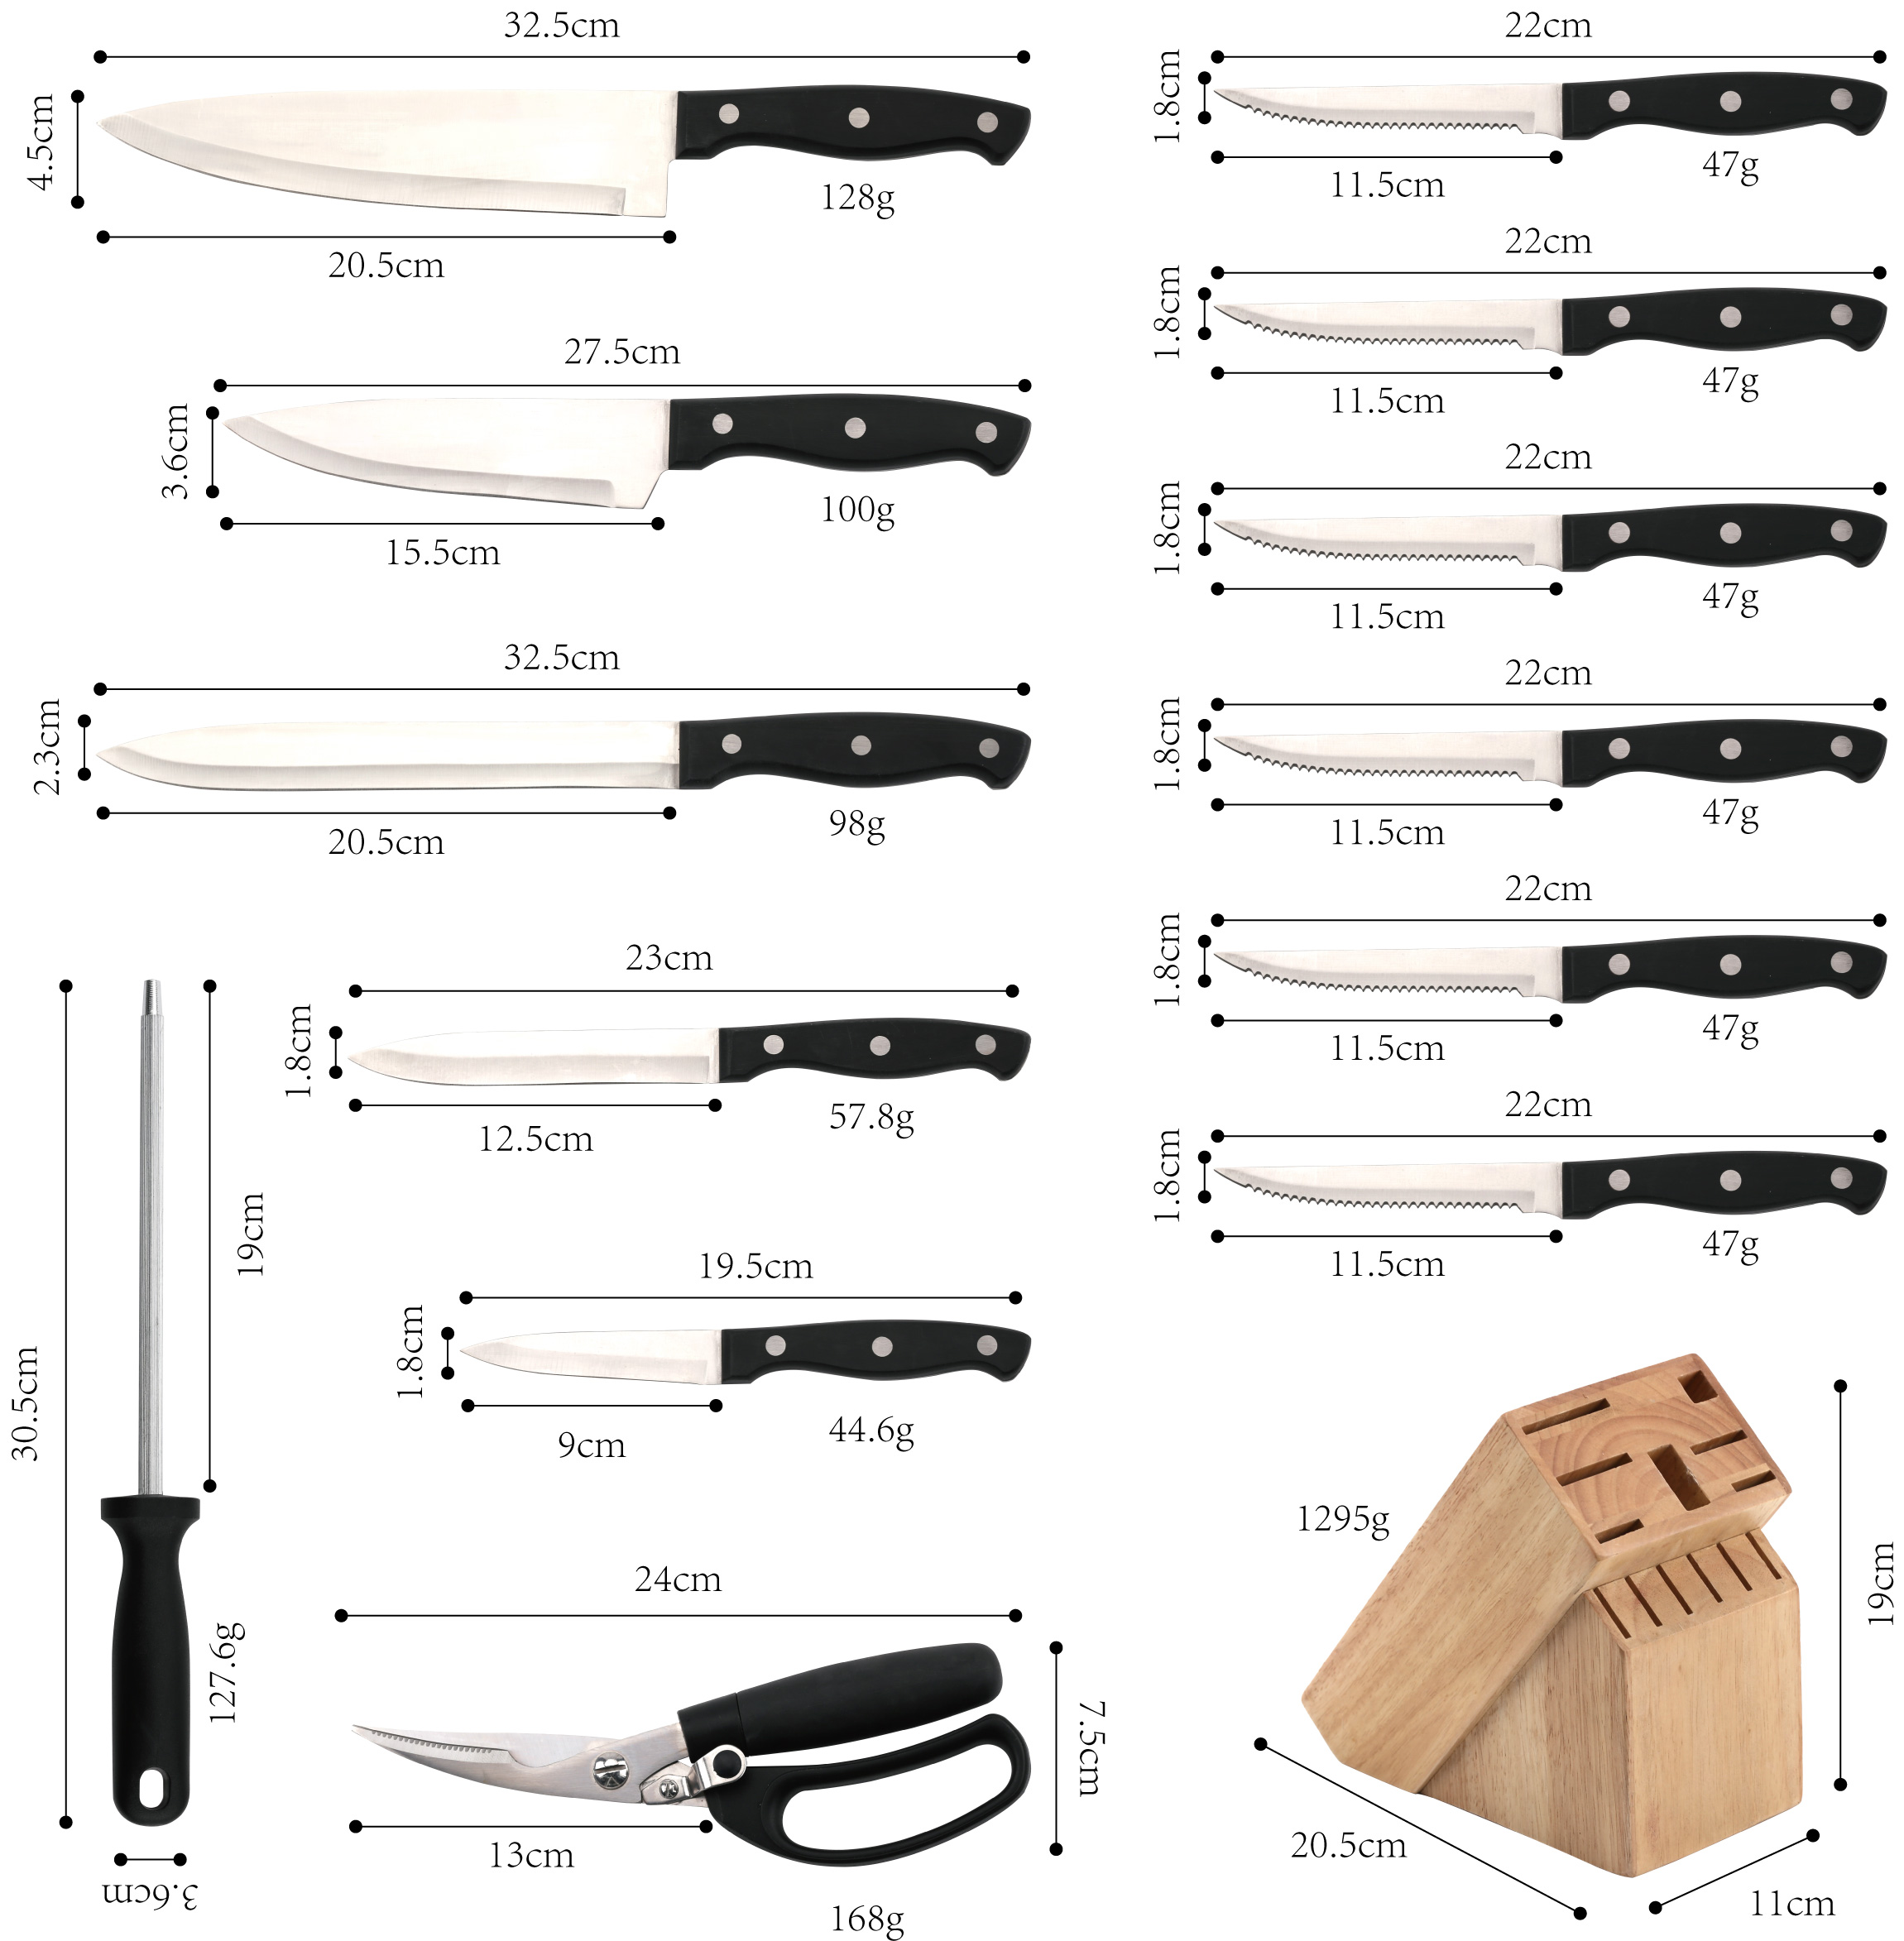 J104-14-компонентний набір кухонних ножів преміум-класу, високовуглецева нержавіюча сталь-ZX | кухонний ніж, кухонні інструменти, силіконова форма для торта, обробна дошка, набори інструментів для випікання, кухарський ніж, ніж для біфштексів, ніж для нарізки, універсальний ніж, ніж для різання, блок ножів, підставка для ножів, ніж Santoku, дитячий ніж, пластиковий ніж, антипригарний малюнок Ніж, барвистий ніж, ніж із нержавіючої сталі, відкривачка для консервів, відкривачка для пляшок, ситечко для чаю, терка, збивачка для яєць, нейлоновий кухонний інструмент, силіконовий кухонний інструмент, формочка для печива, набір кулінарних ножів, точилка для ножів, очисник, ніж для торта, ніж для сиру, піци Ніж, силіконова лопатка, силіконова ложка, харчові щипці, кований ніж, кухонні ножиці, ножі для випічки тортів, дитячі кухонні ножі, ніж для різьблення